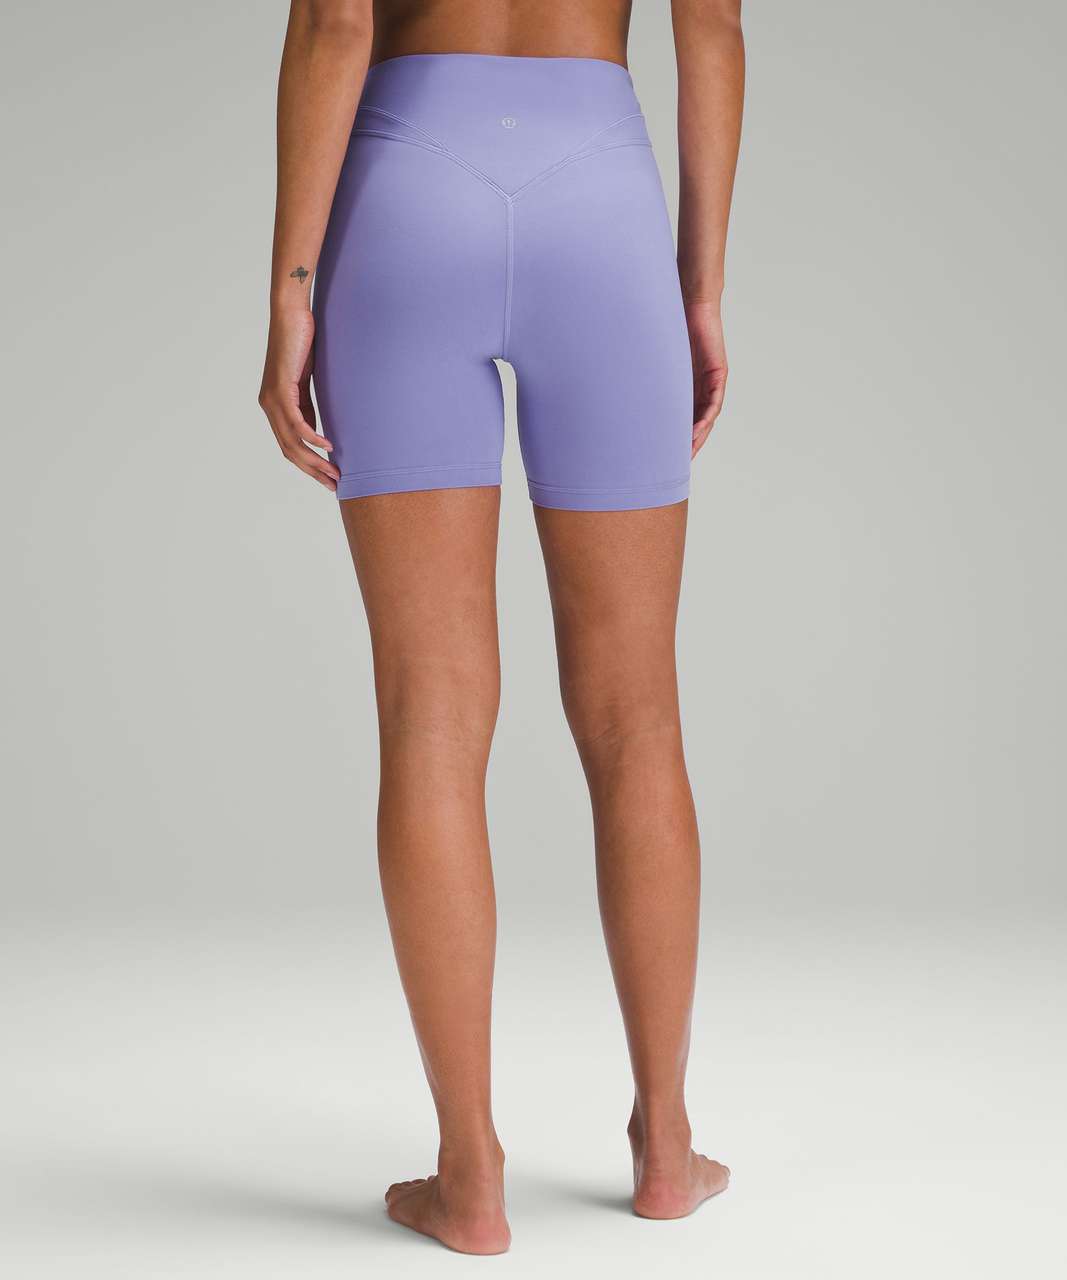 lululemon athletica, Shorts, Purple Lululemon Womens Shorts Size 8